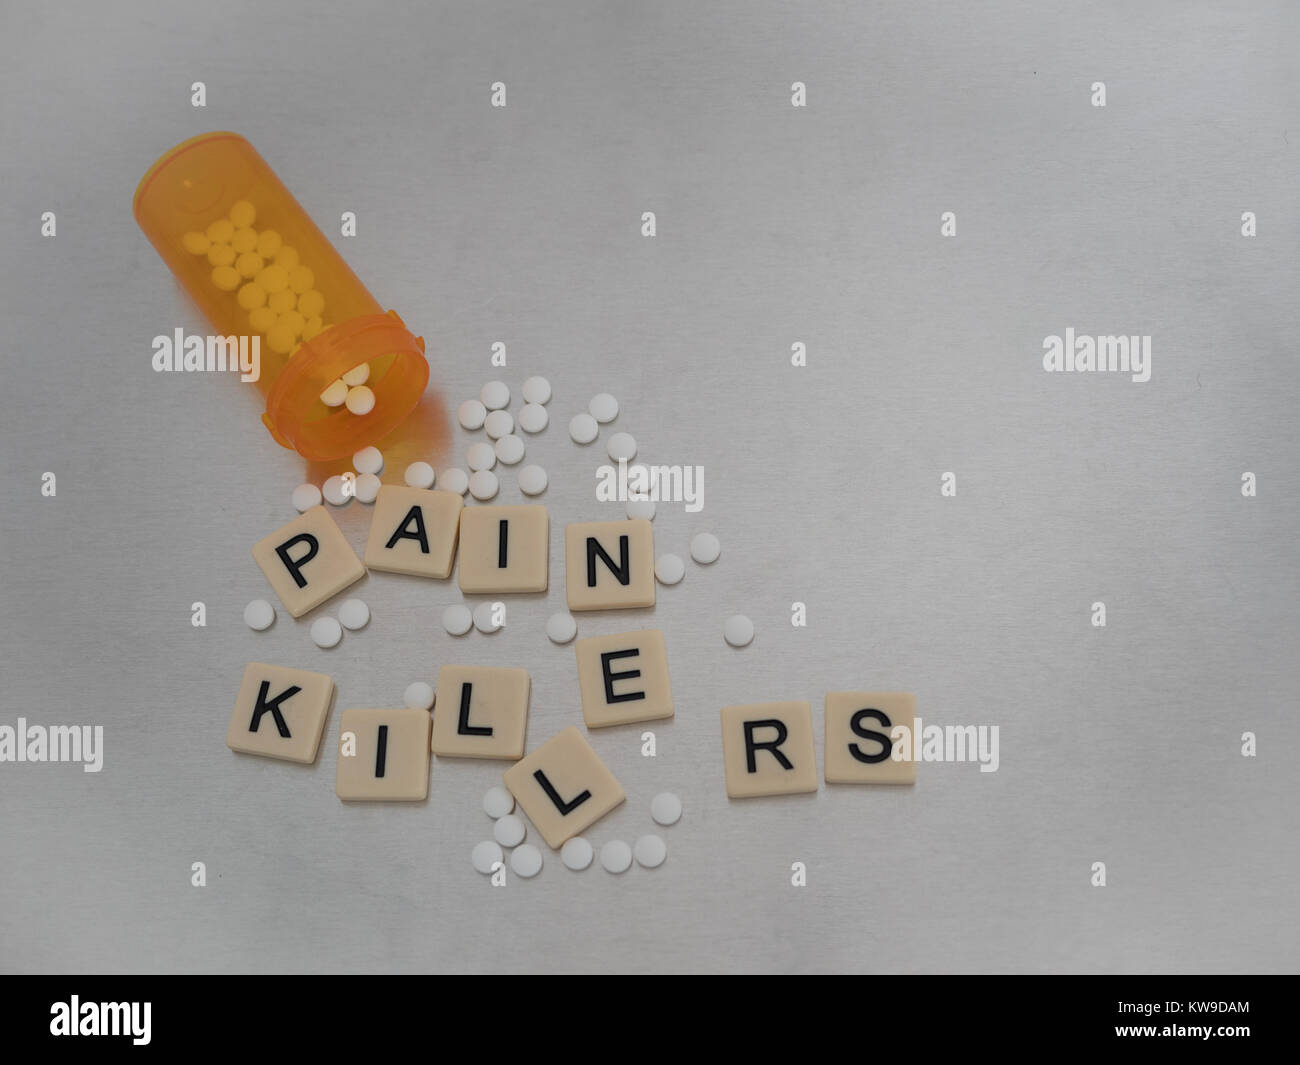 Pain Killer scritto con lettere di piastrelle collocato in modo casuale con una bottiglia aperta di pastiglie di ossicodone. Fotografato dal di sopra in acciaio inossidabile Foto Stock